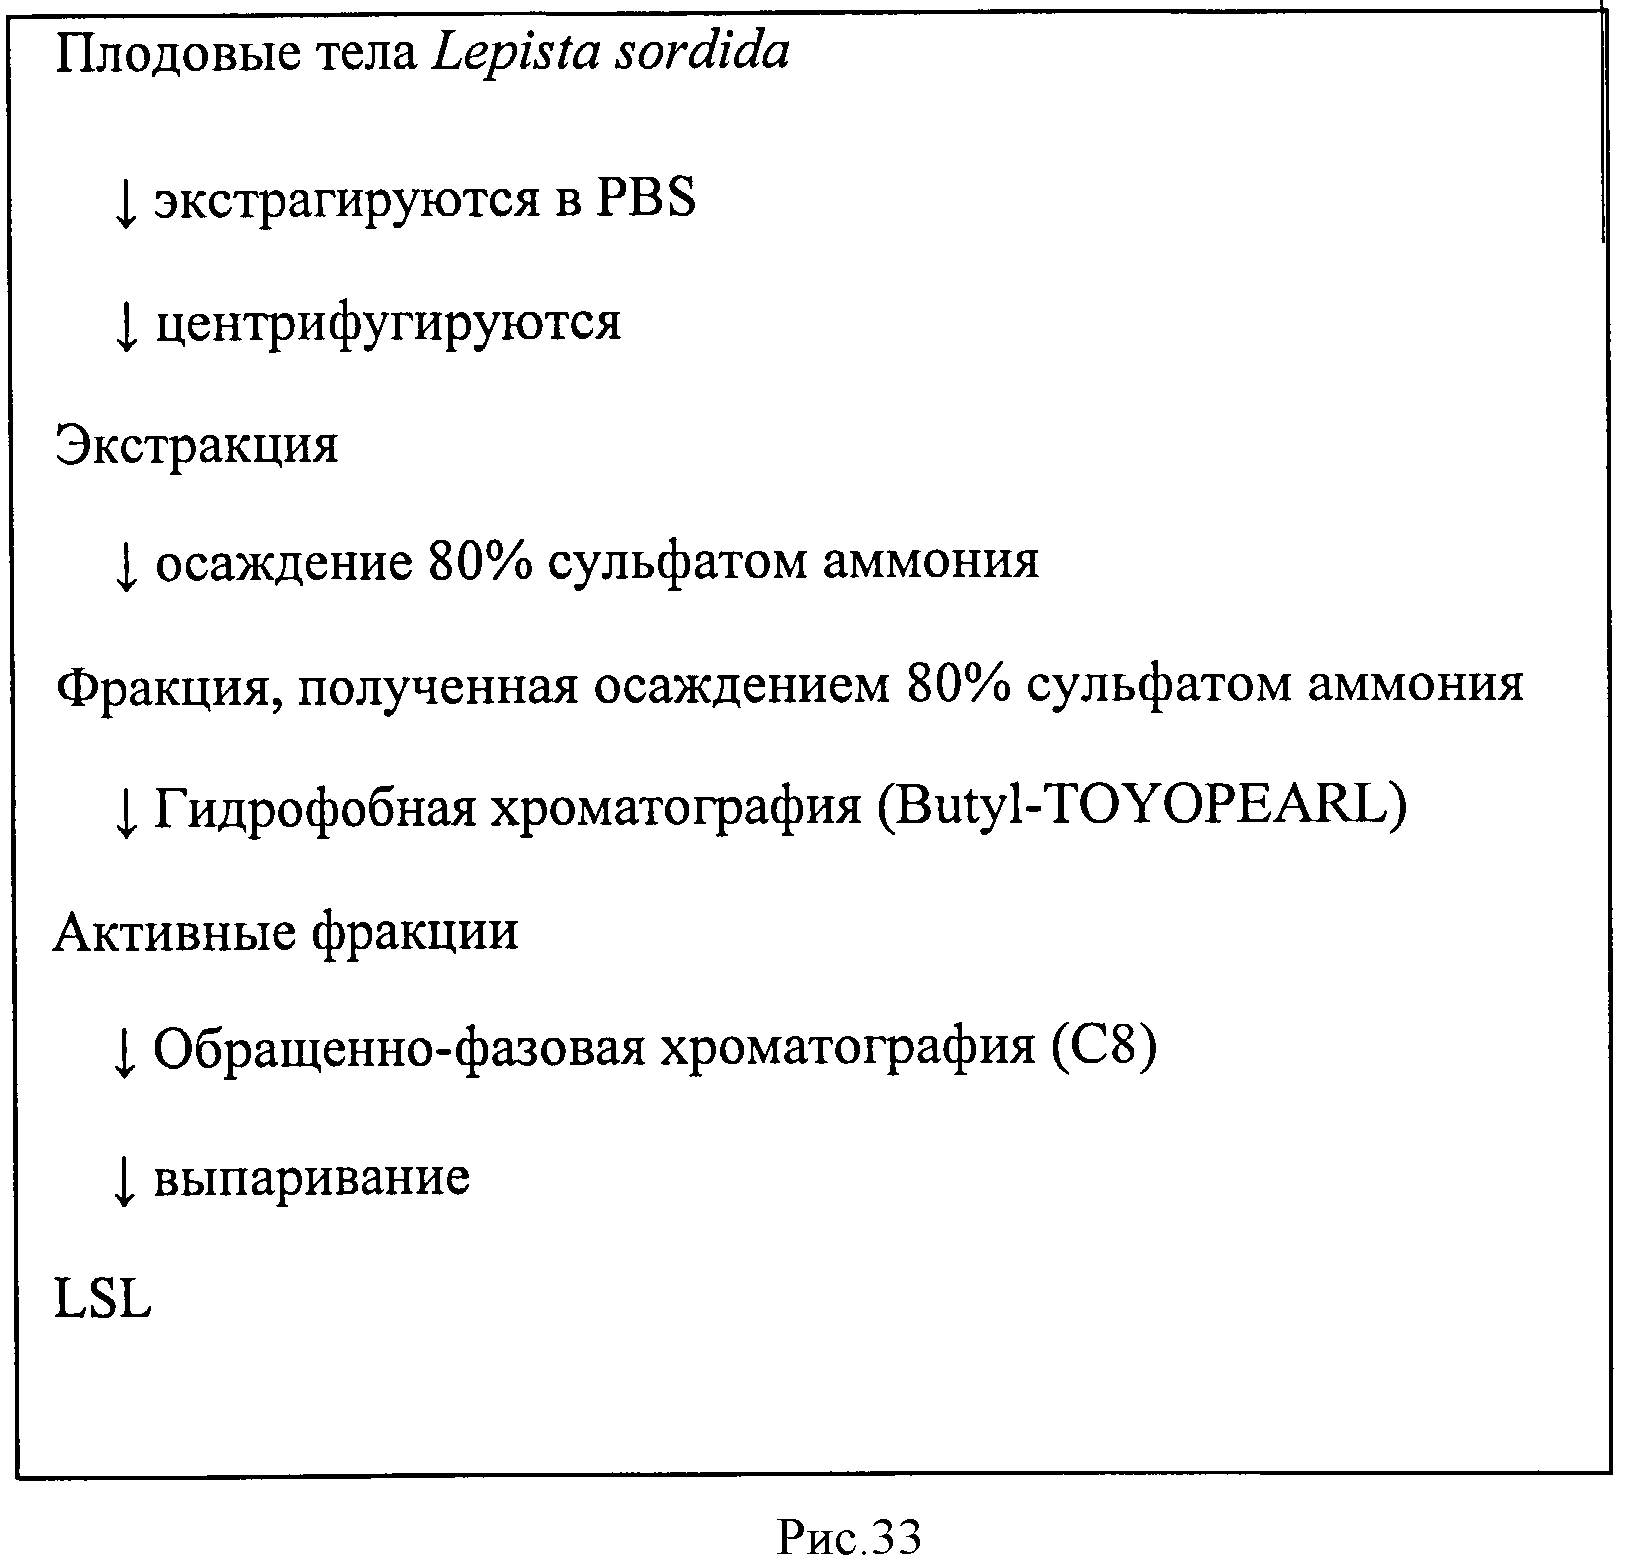 L-ФУКОЗА α1→6 СПЕЦИФИЧНЫЙ ЛЕКТИН